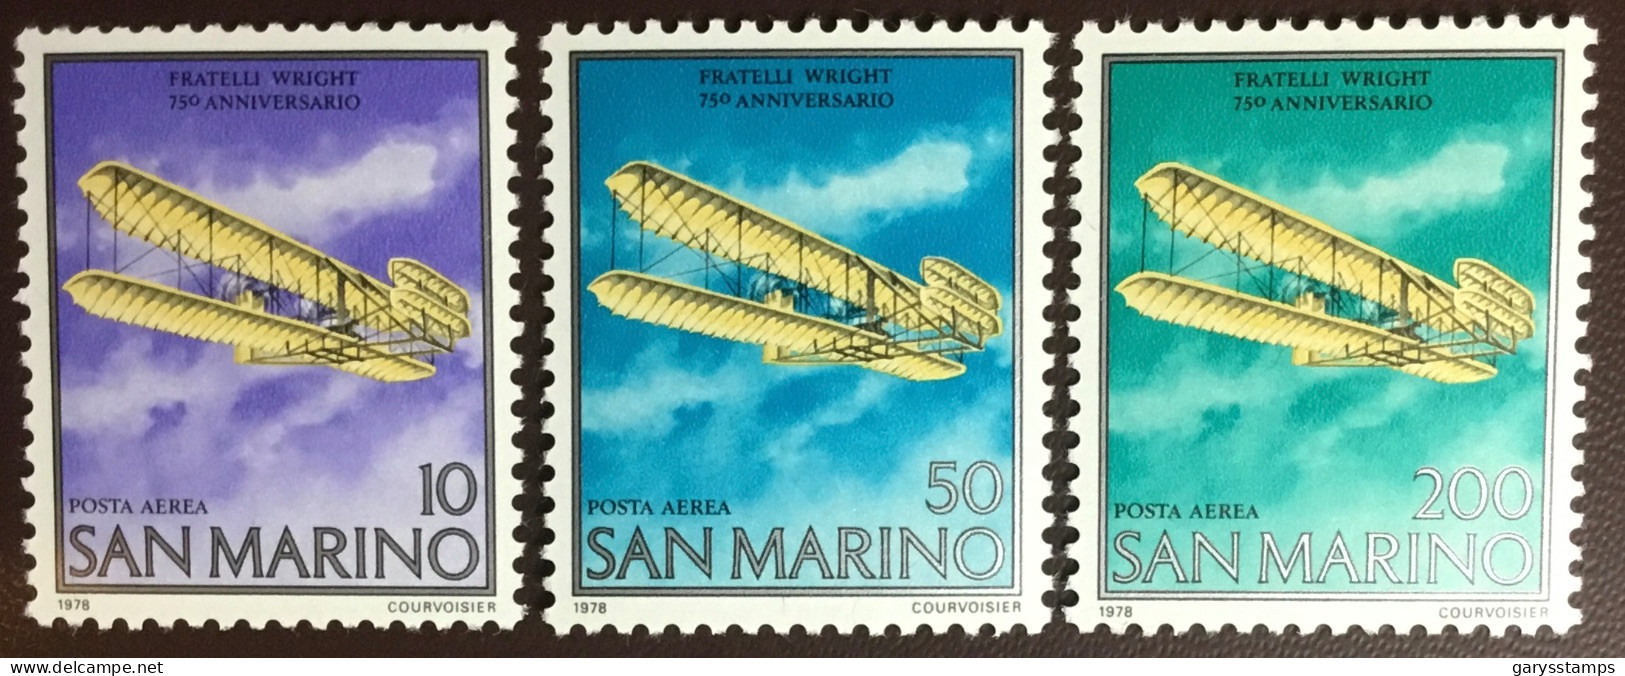 San Marino 1978 Wright Brothers Anniversary MNH - Nuevos